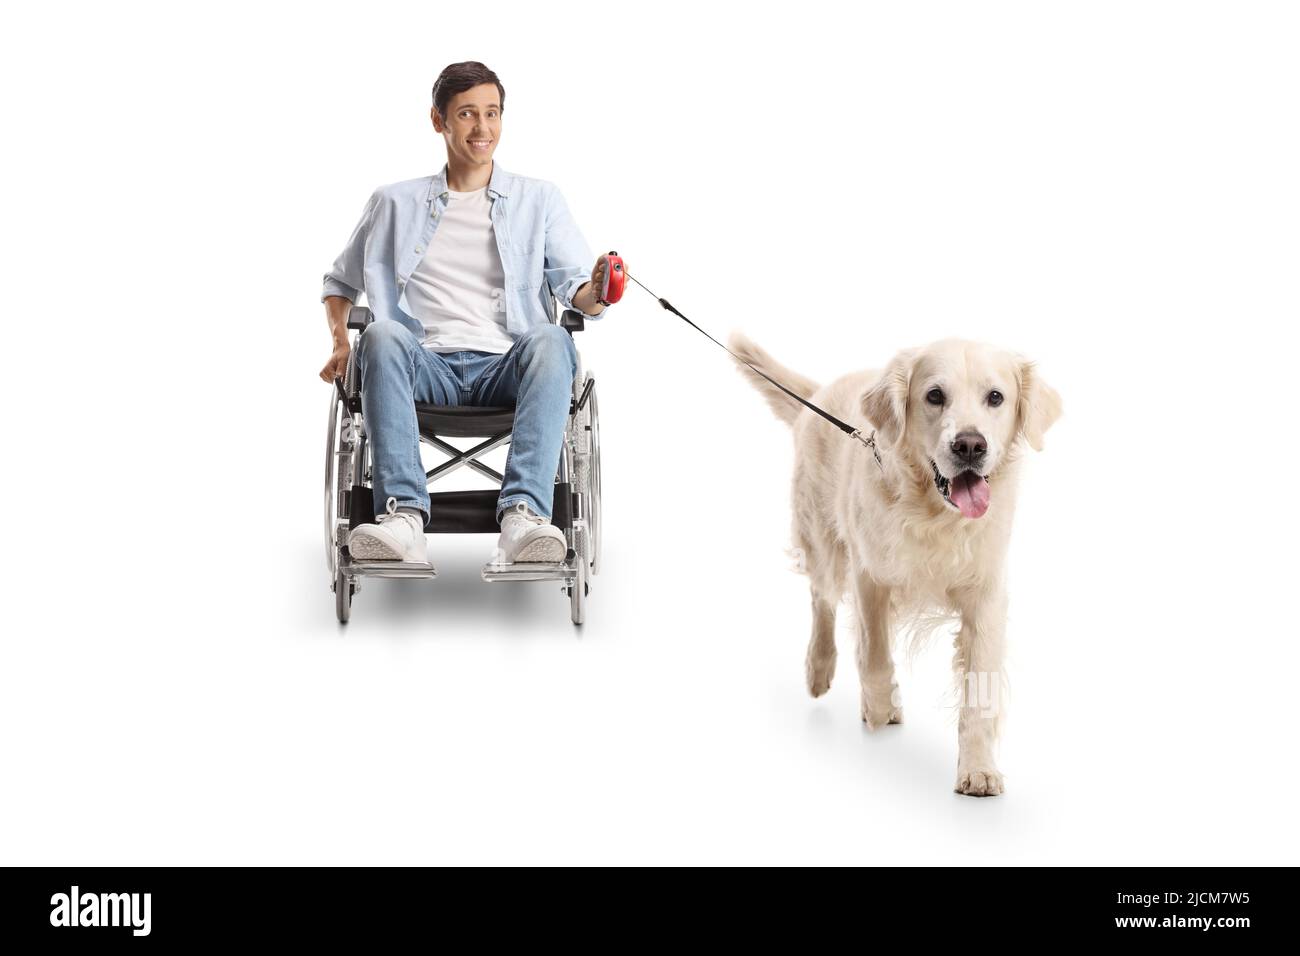 Giovane uomo in sedia a rotelle con un cane ritrovato isolato su sfondo bianco Foto Stock